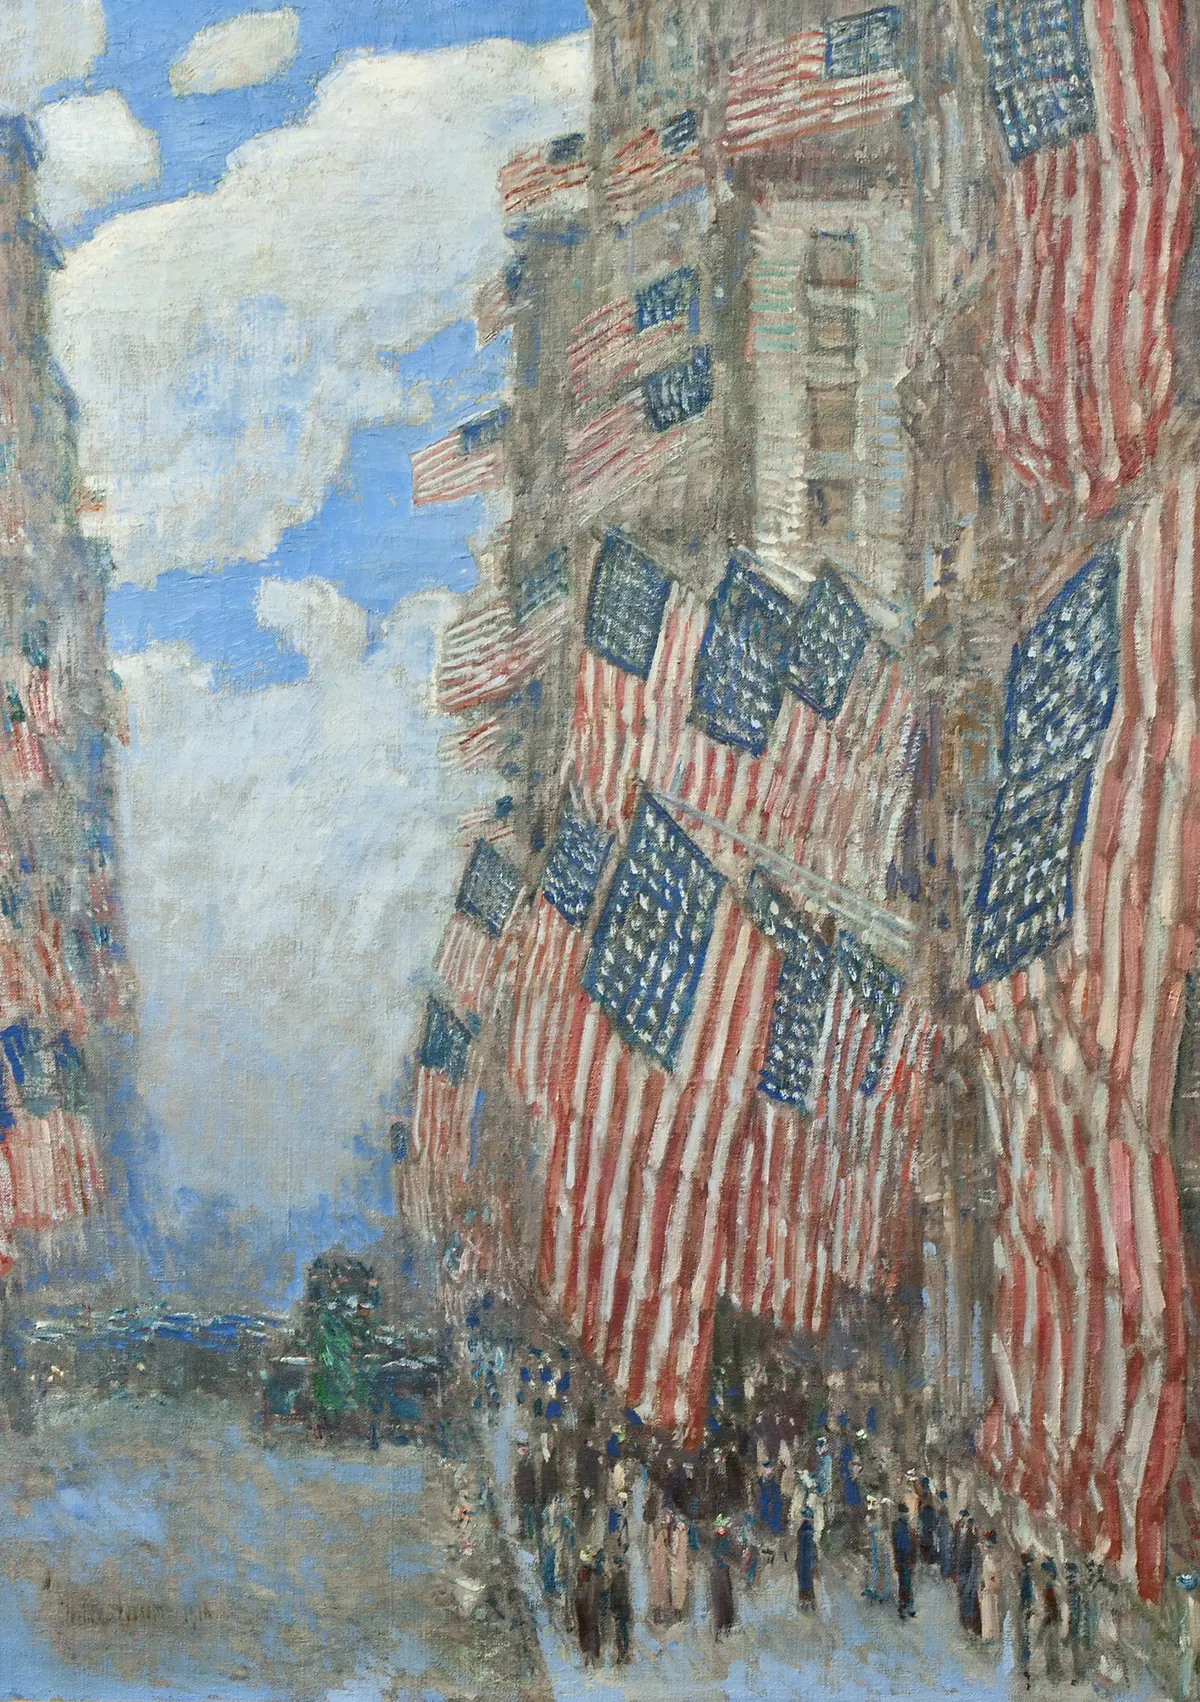 Il Quattro Luglio 1916 by Frederick Childe Hassam - 1916 - 91,4 × 66,7 cm 